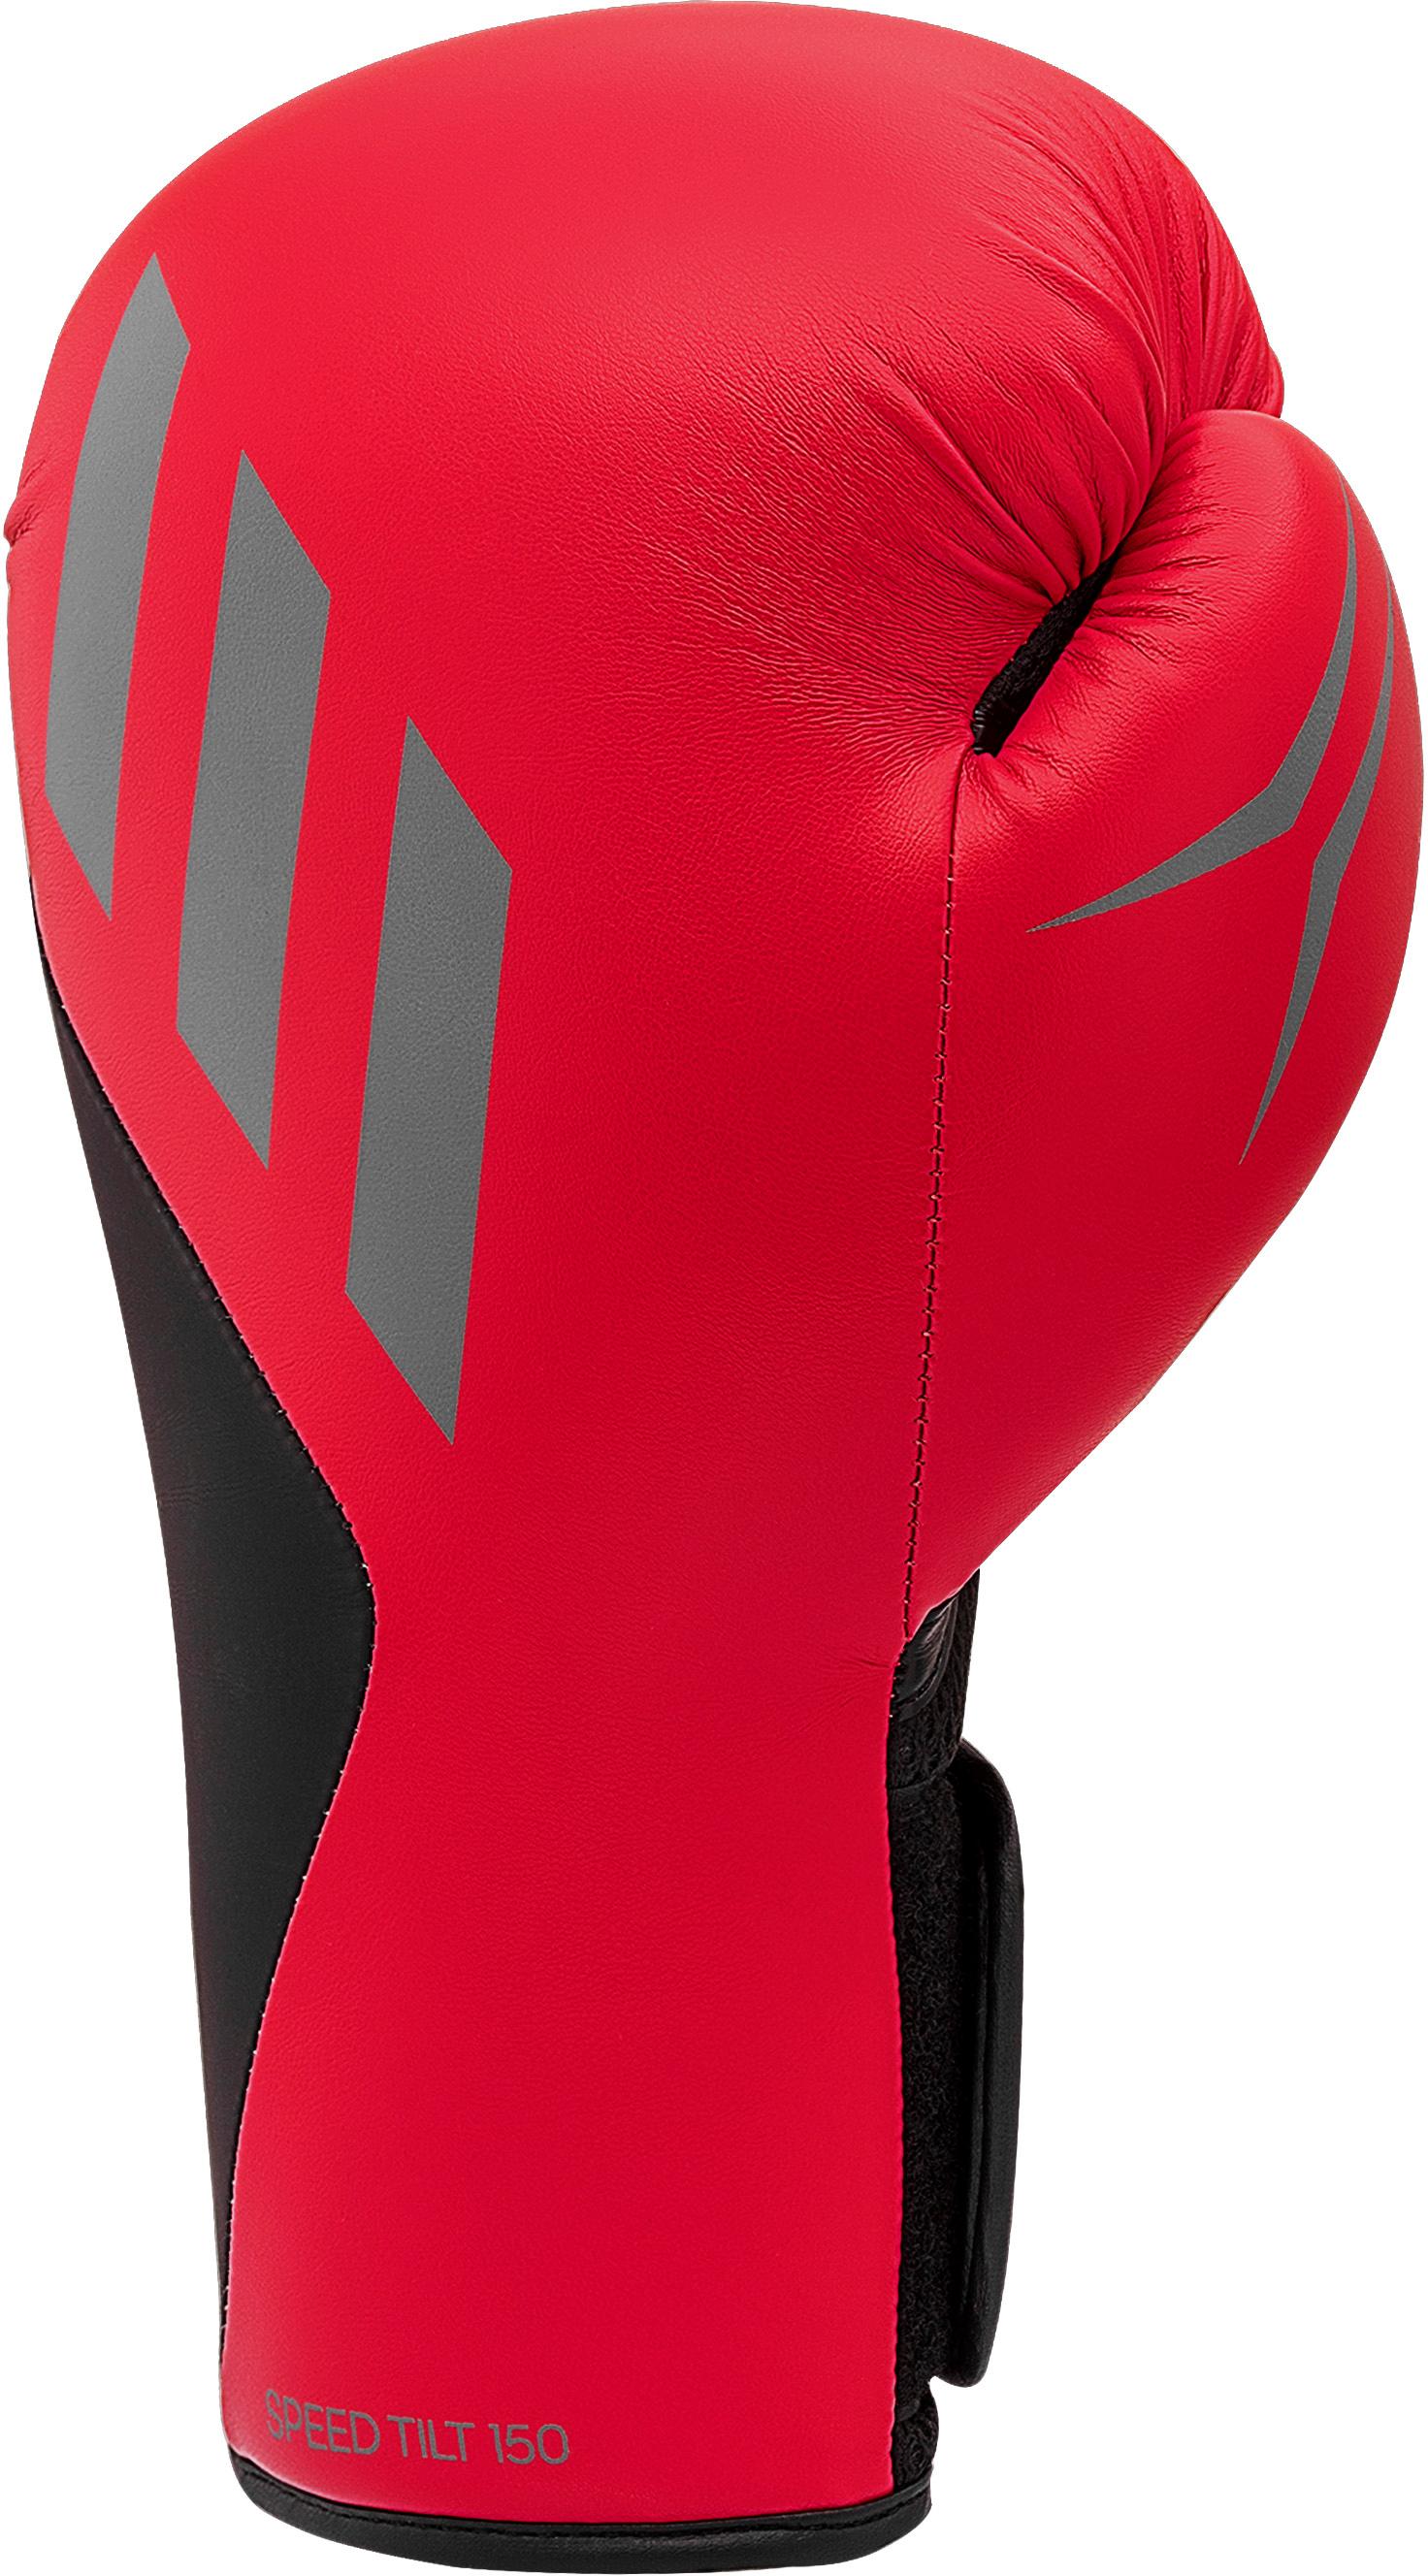 Adidas Speed Tilt SportScheck 150 Boxhandschuhe Online von rot-schwarz Shop im Herren kaufen